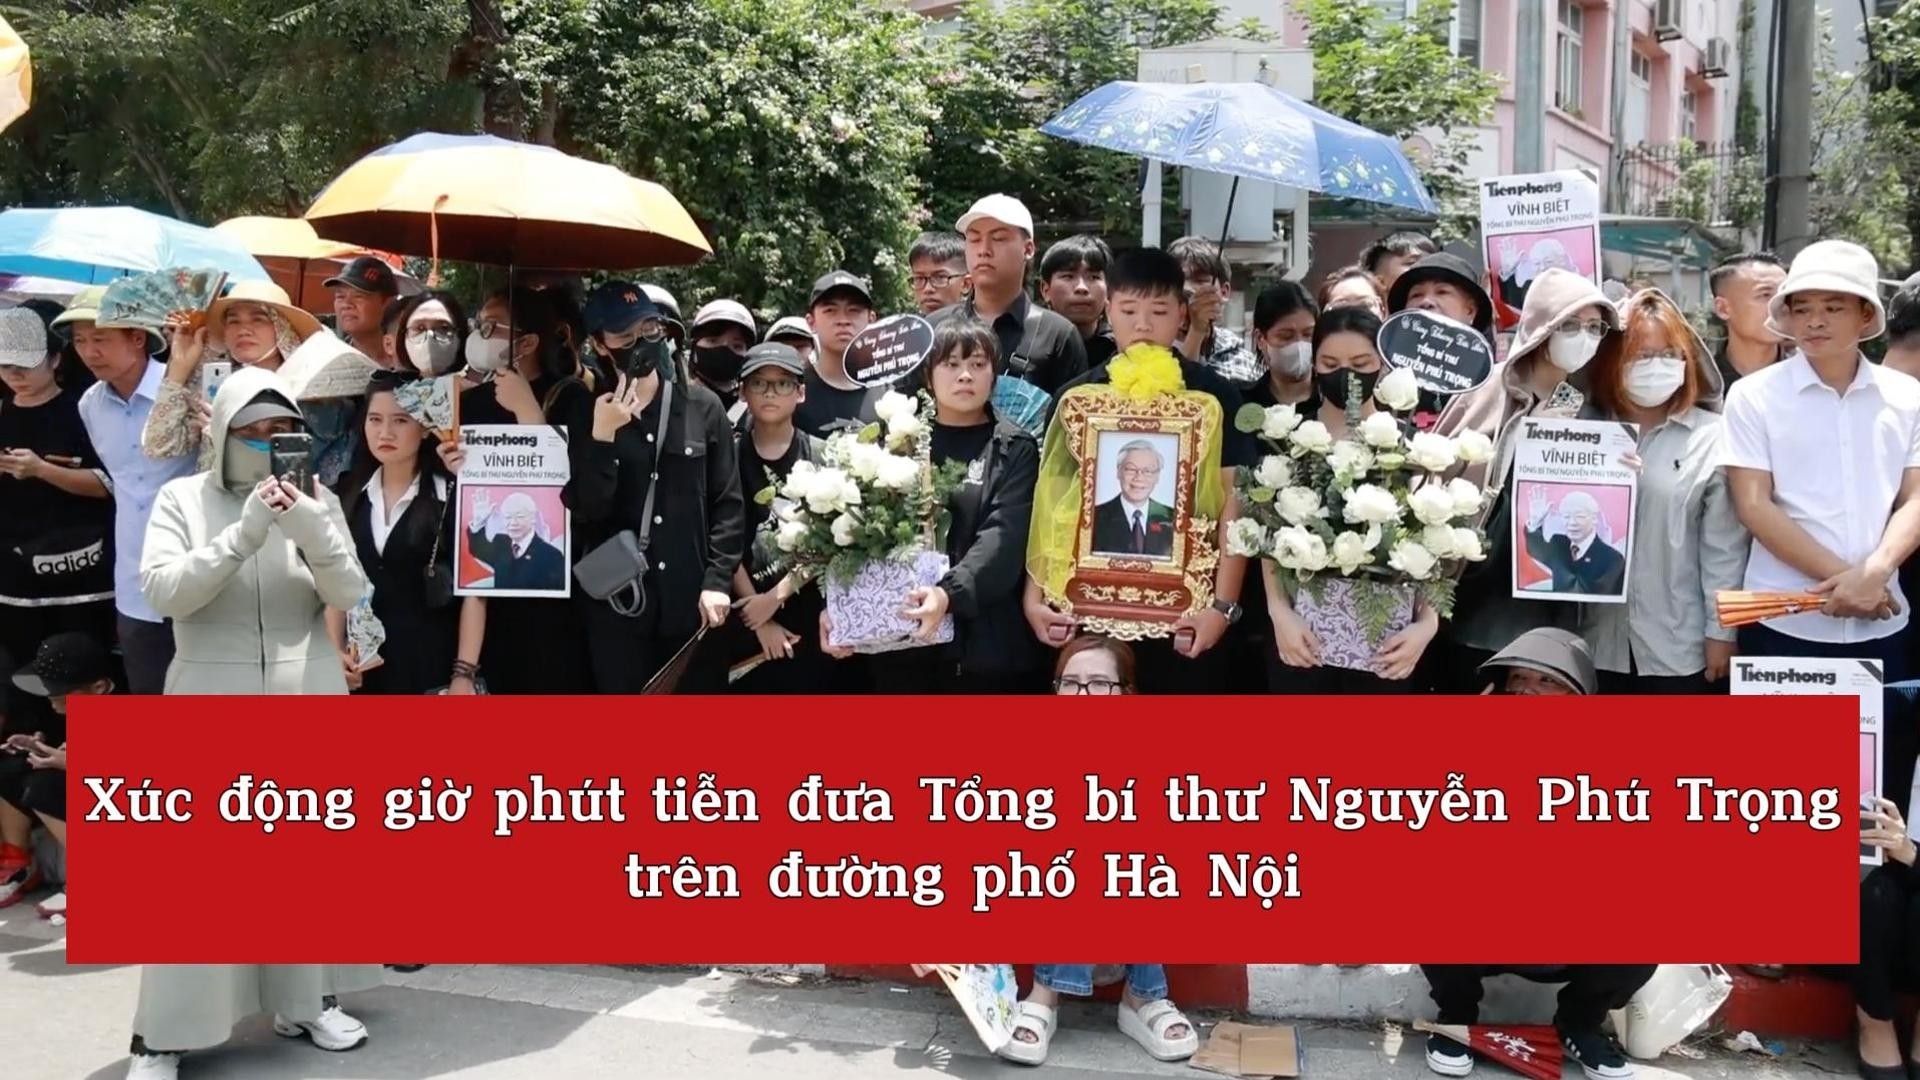 [video] Xúc động giờ phút tiễn đưa Tổng bí thư Nguyễn Phú Trọng trên đường phố Hà Nội